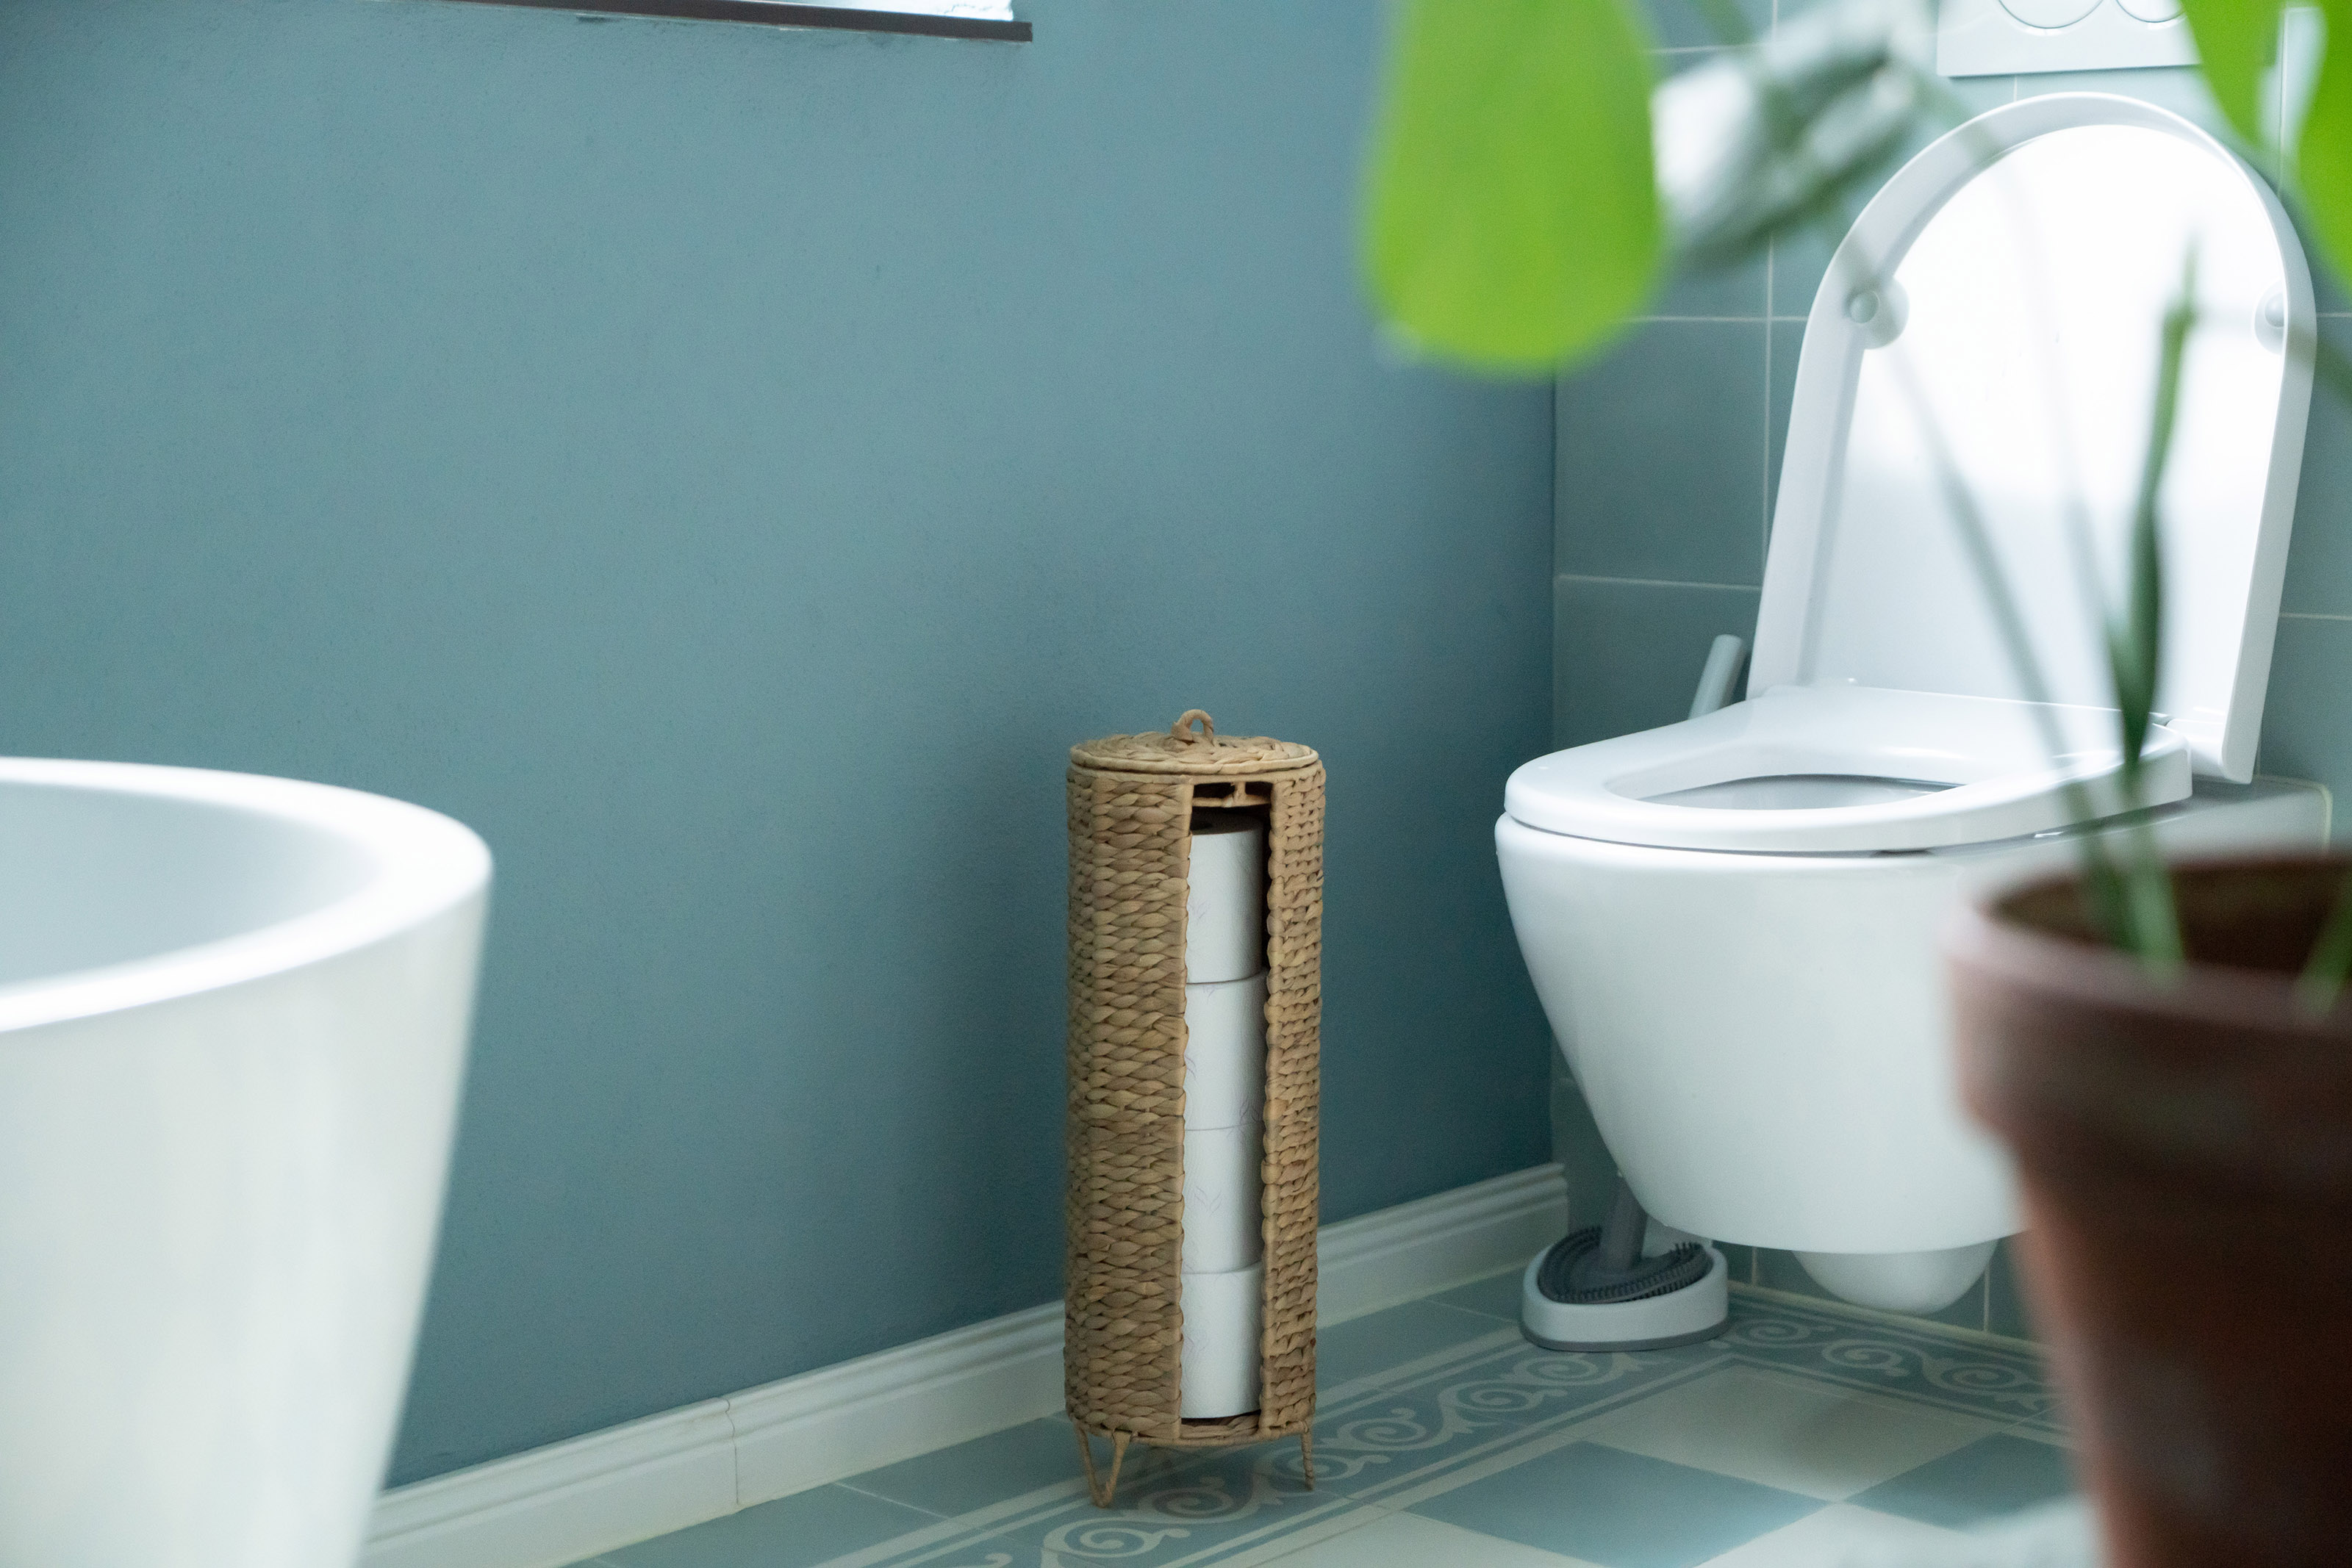 Toilettenpapieraufbewahrung für 4 WC Rollen, geflochten aus Wasserhyazinthe